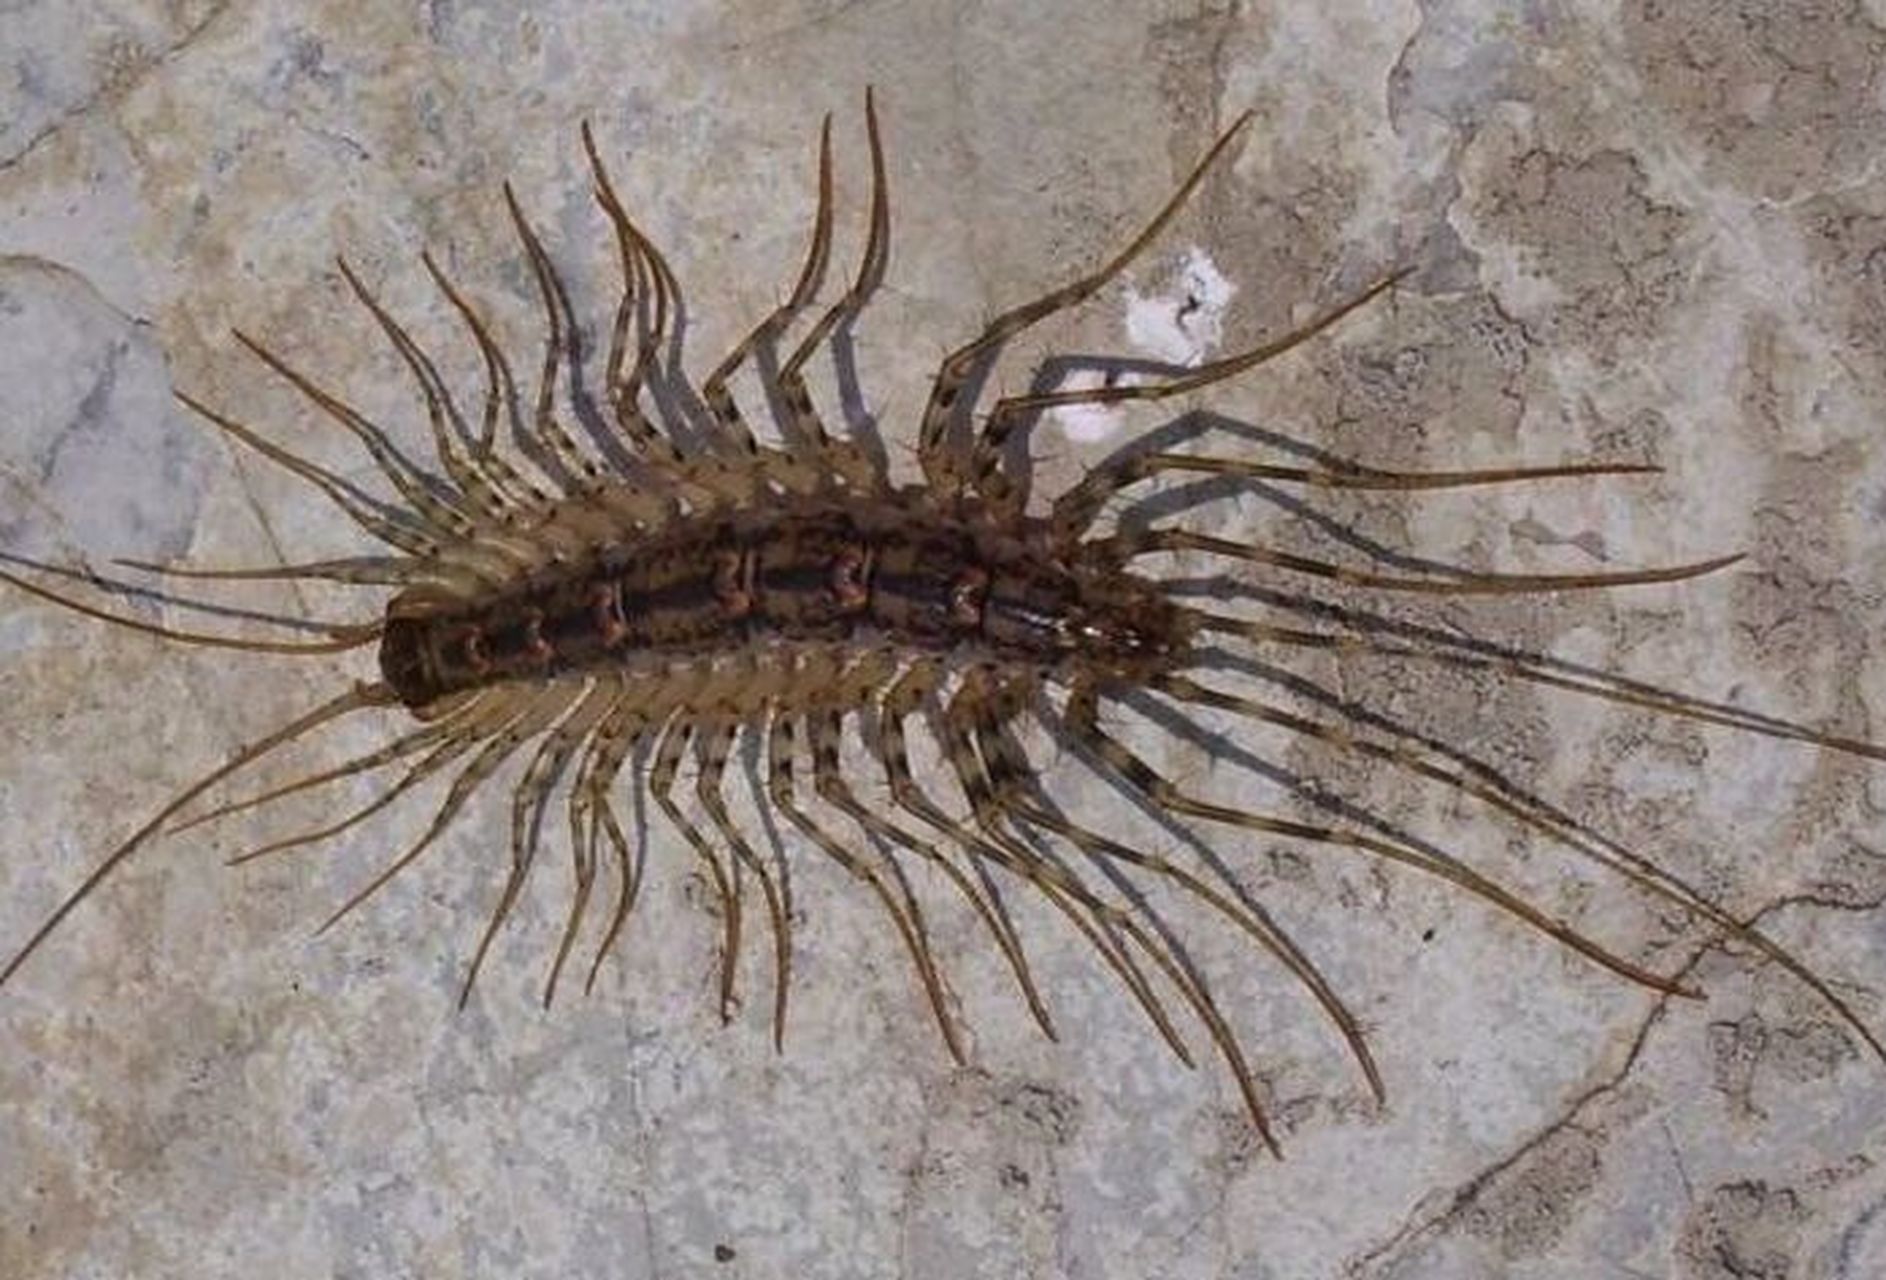 成虫的蚰蜒身长约25~50毫米,在背板上有硬壳,蚰蜒的15对足很长且脆弱